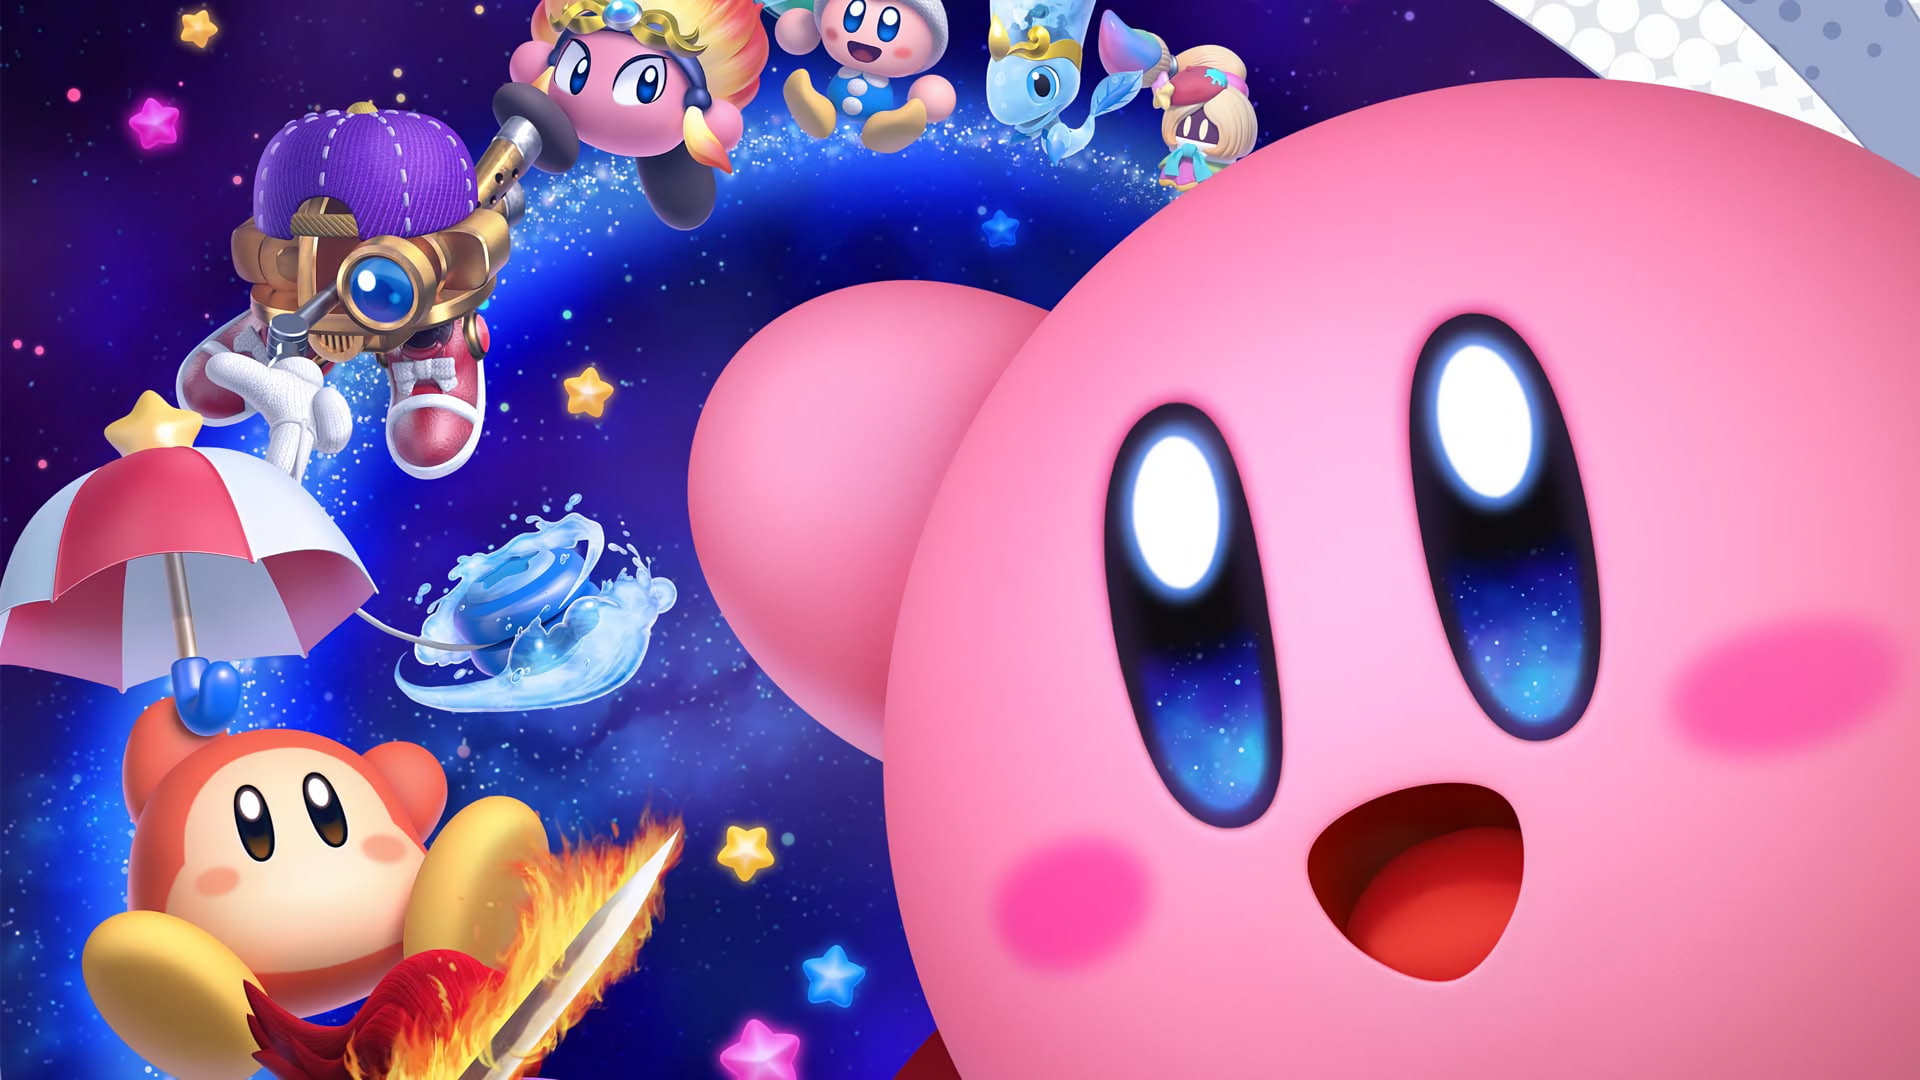 Datos curiosos que quizás no sabías sobre Kirby